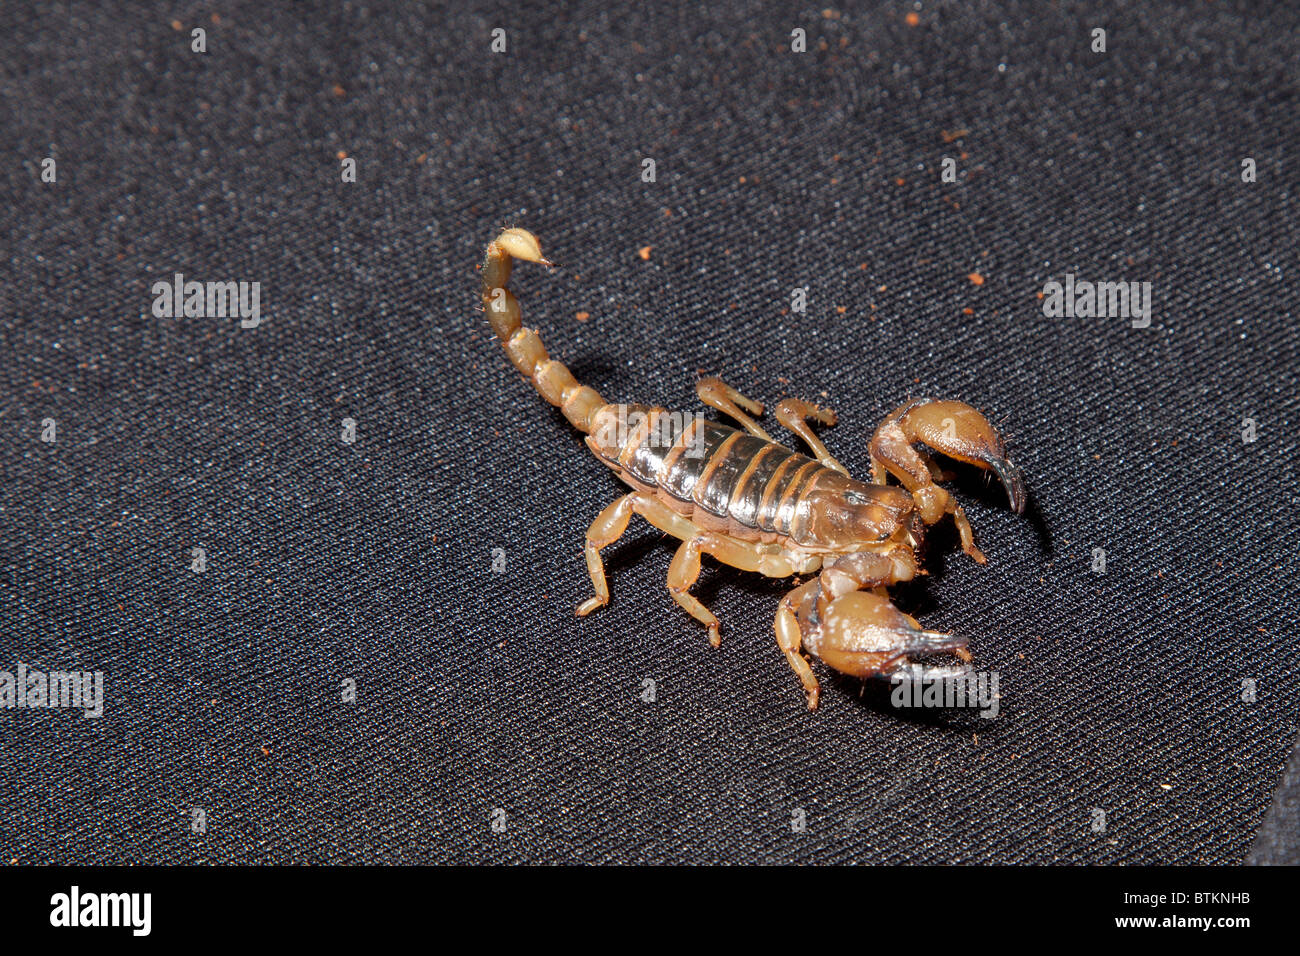 Scorpion d'or israélien en captivité Banque D'Images